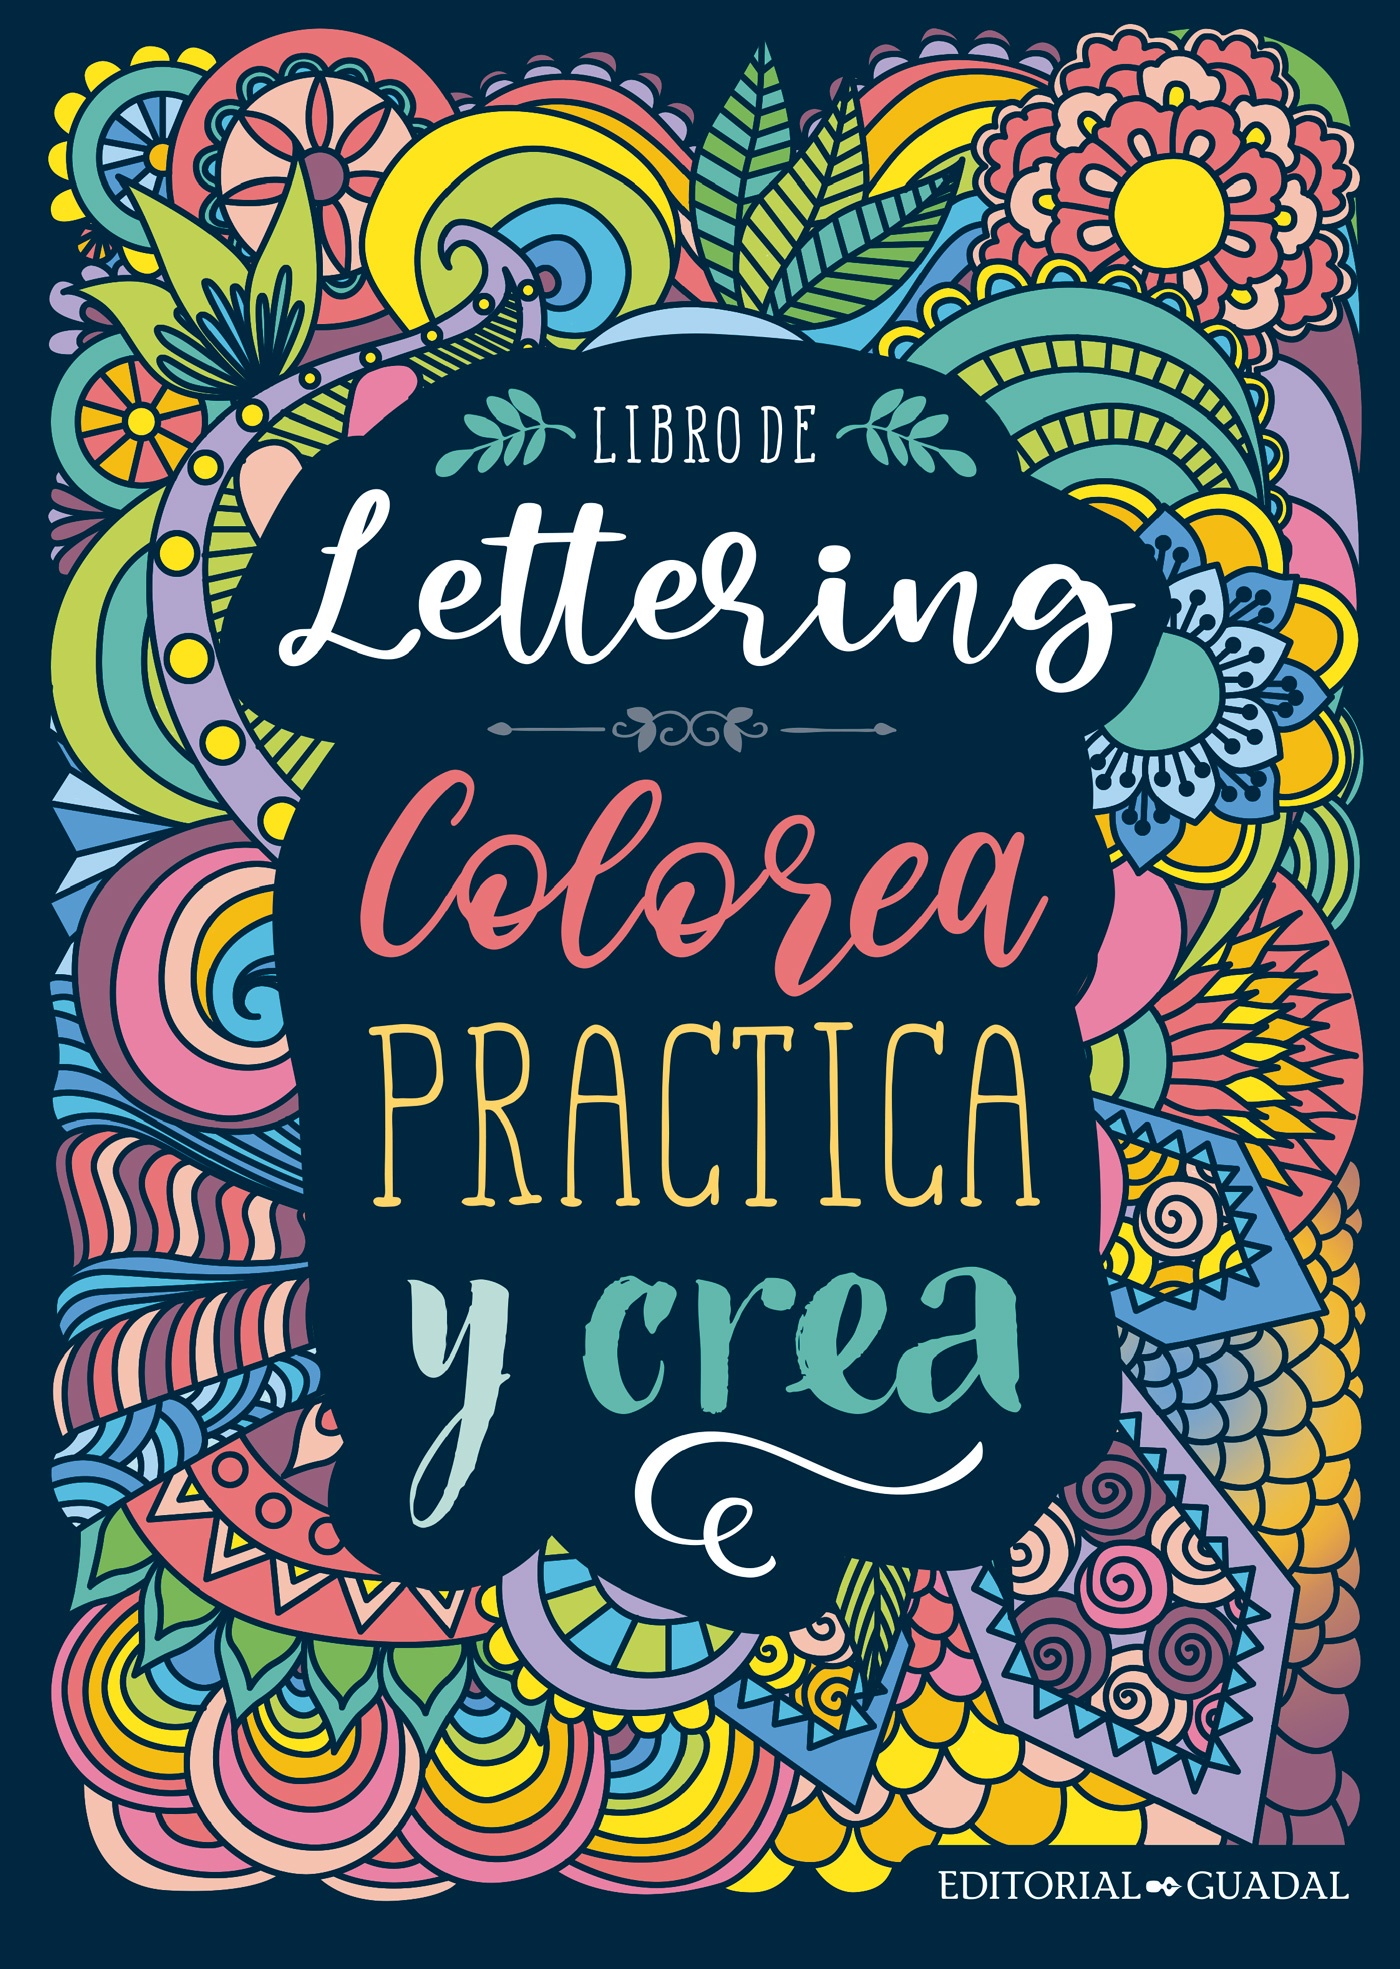 Libro de Lettering, Editorial Guadal - El Gato de Hojalata